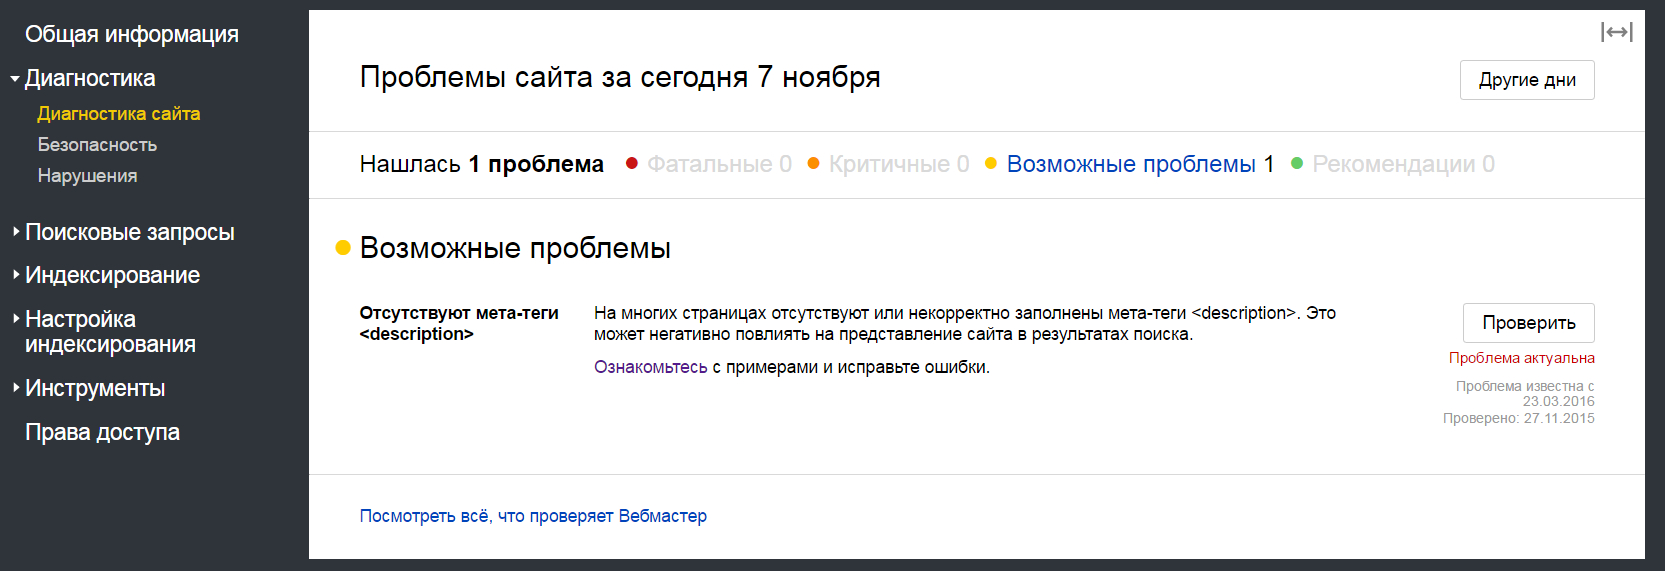 Подраздел «Диагностика сайта» в Яндекс.Вебмастере